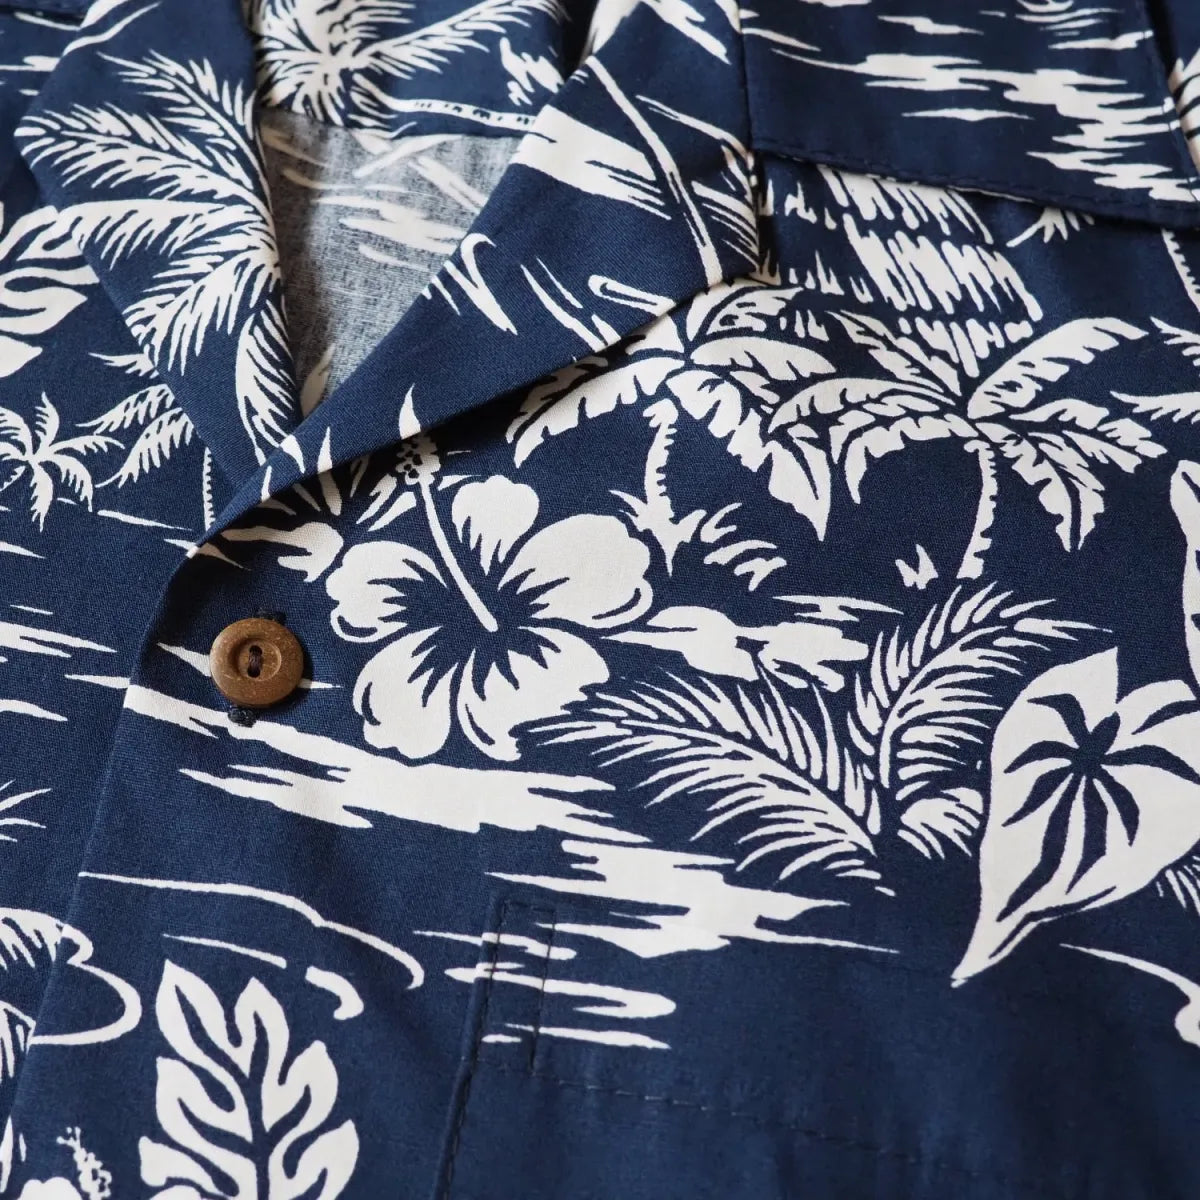 Island navy hawaiian cotton shirt